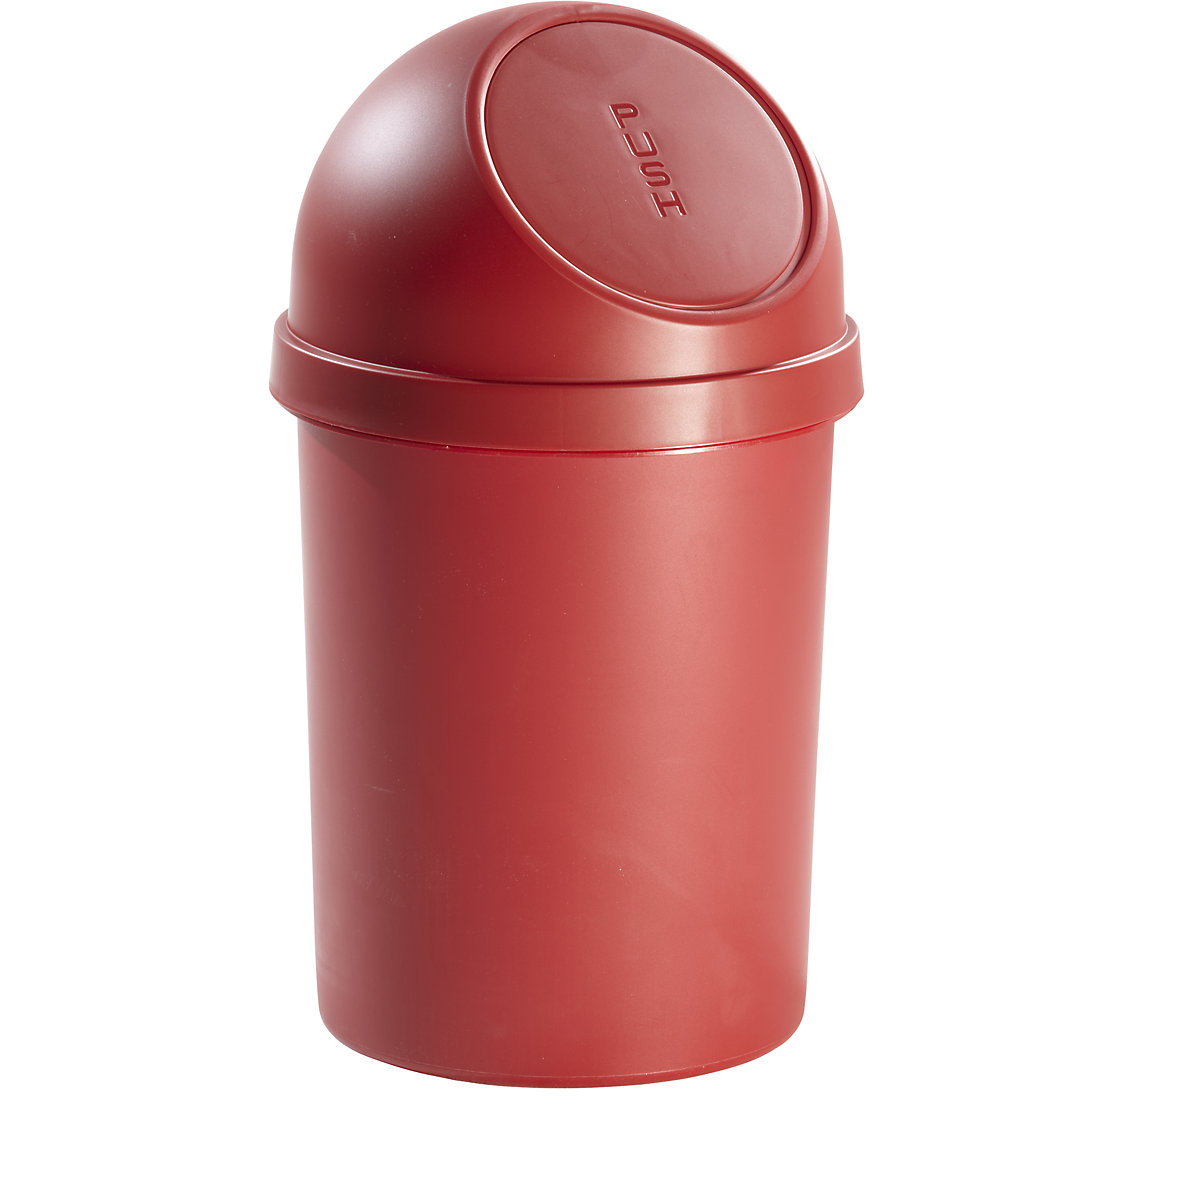 helit – Samozavírací nádoba na odpadky z plastu, objem 45 l, v x Ø 700 x 400 mm, červená, bal.j. 2 ks